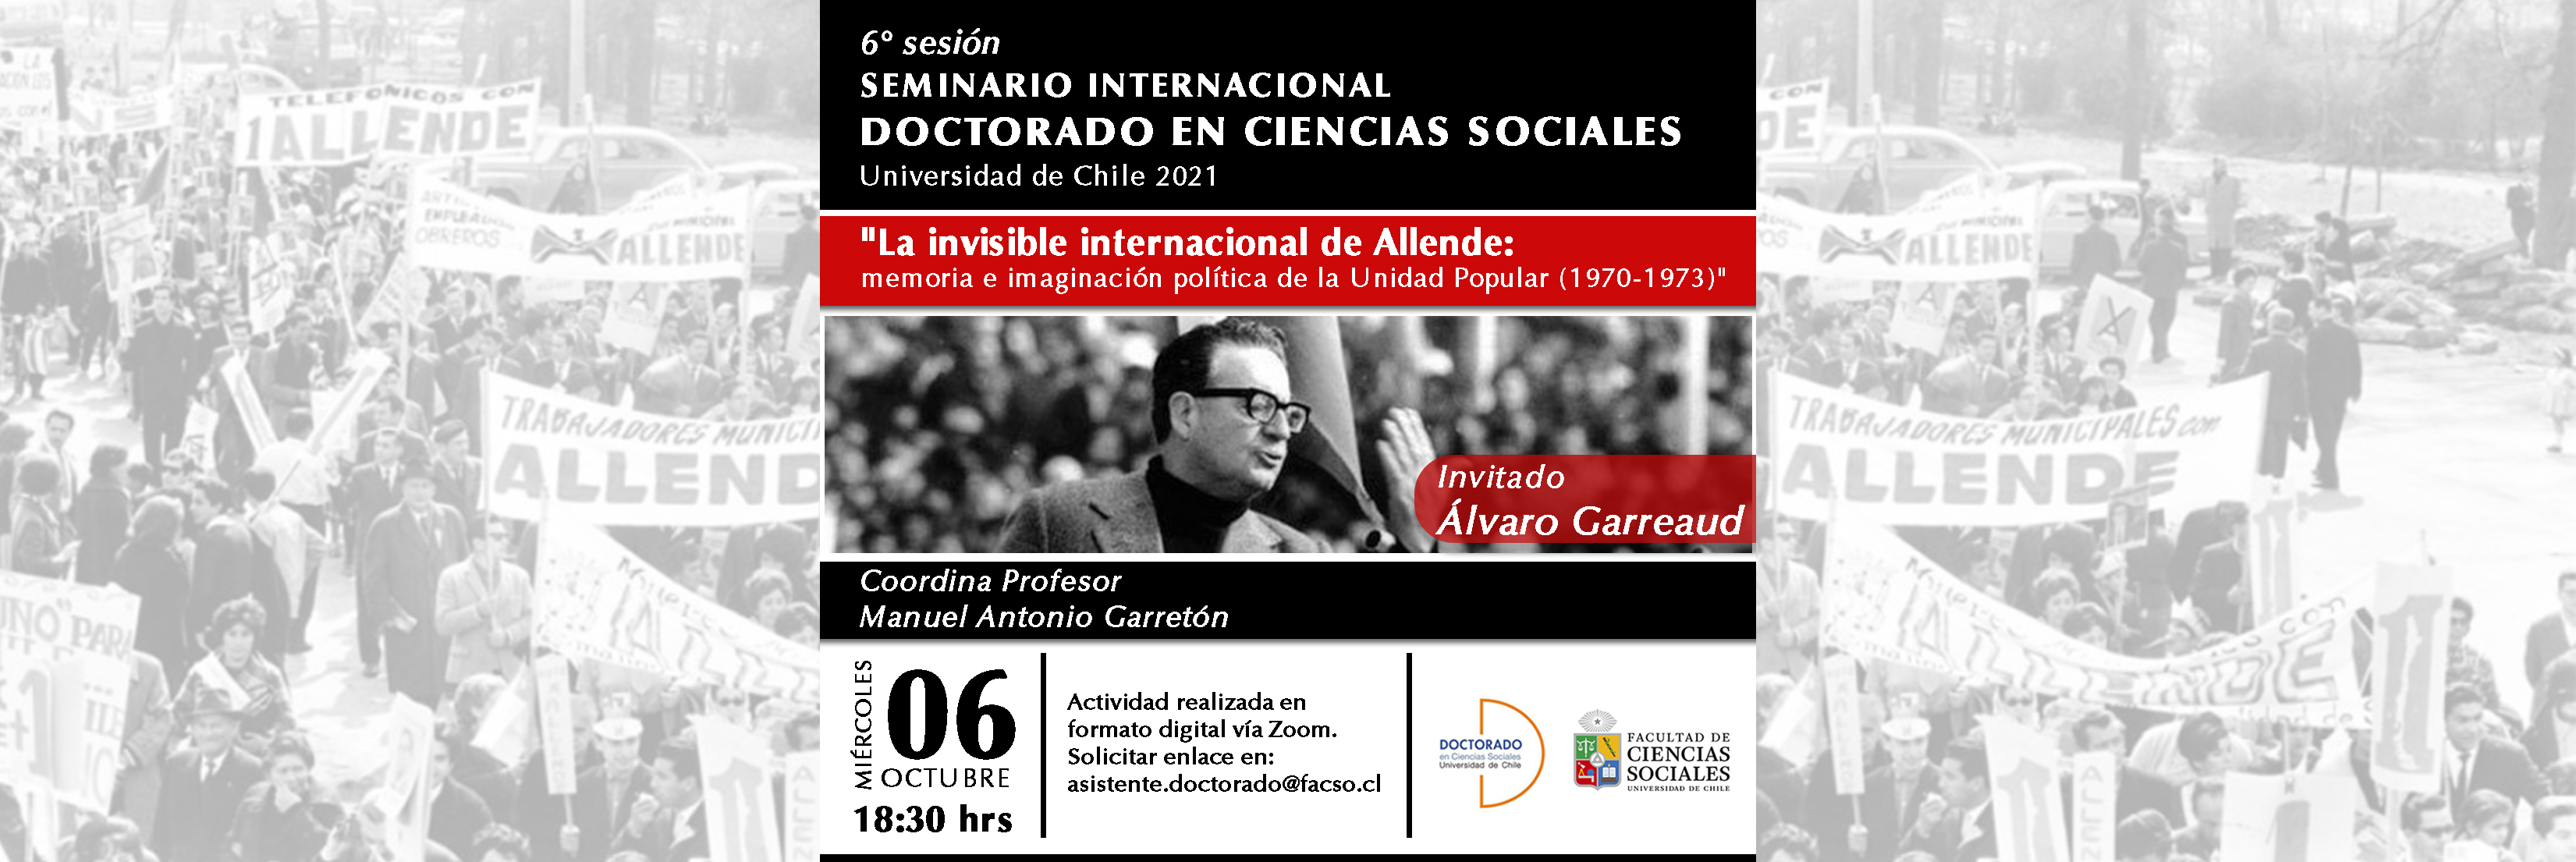 Sexta sesión del seminario Internacional del Doctorado en Ciencias Sociales 2021